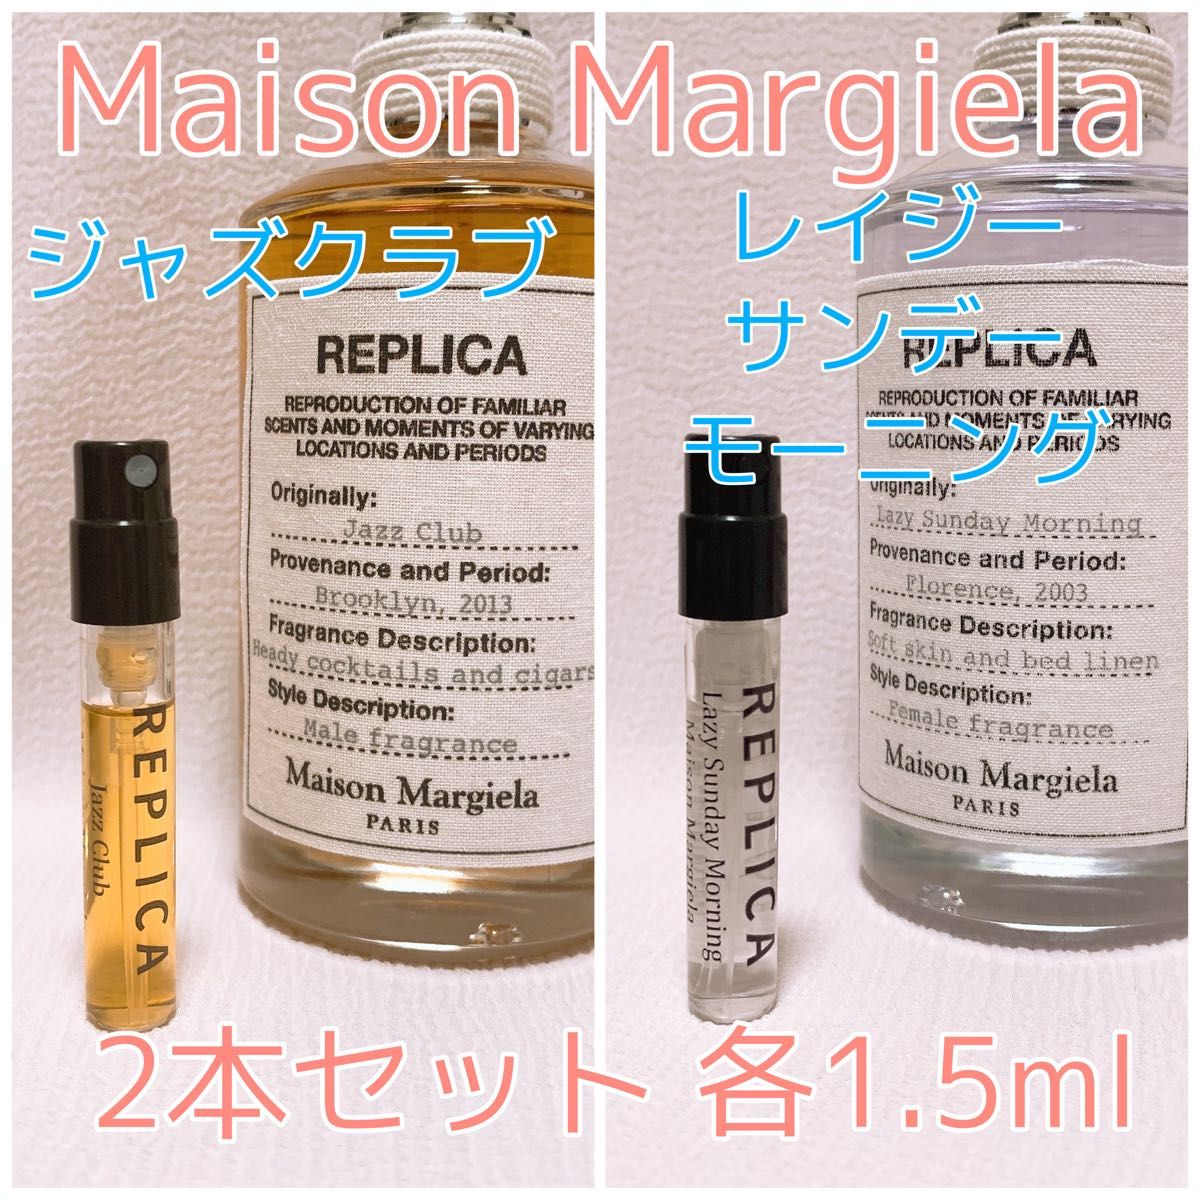 メゾンマルジェラ レプリカ レイジーサンデーモーニング 1.5ml 香水